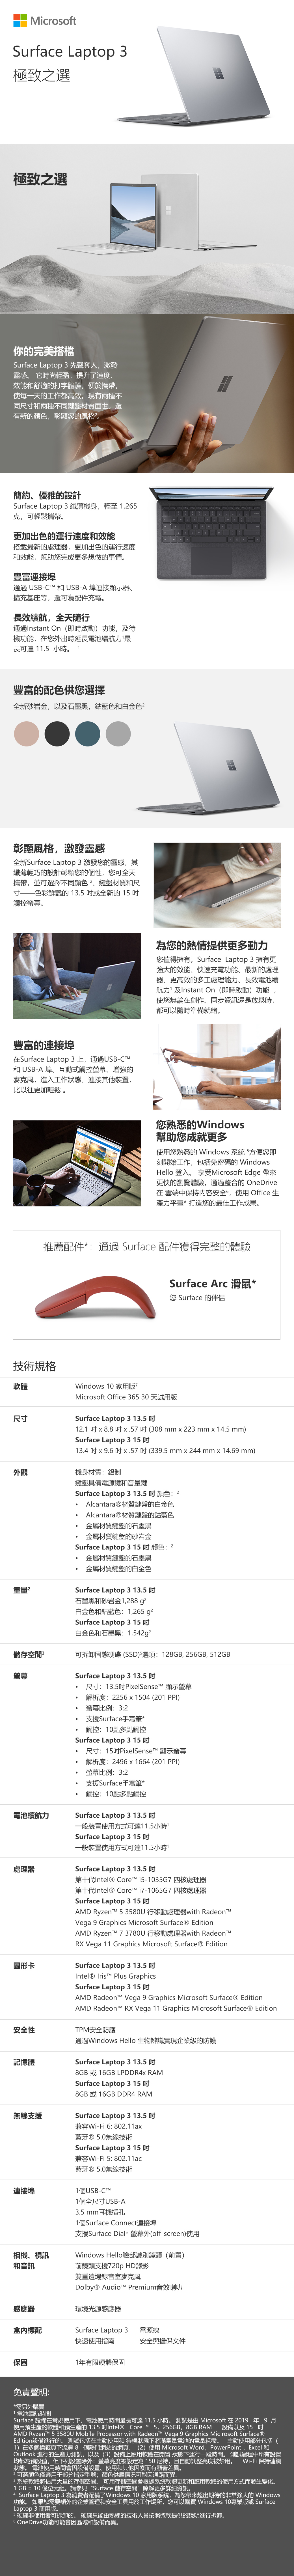 MicrosoftSurface Laptop 3極致之選極致之選你的完美搭檔Surface Laptop 3 先聲奪人激發靈感 它時尚輕盈,提升了速度效能舒適的打字體驗,便於攜帶,使每一天的工作都高效。現有兩種不同尺和兩種不同鍵盤材質面世,還有新的顏色,彰顯的風格簡約、優雅的設計Surface Laptop3纖薄機身,輕至,克,可輕鬆攜帶。更加出色的運行速度和效能搭載最新的處理器,更加出色的運行速度和效能,幫助您完成更多想做的事情。豐富連接埠通過 USB-CT 和USB-A埠連接顯示器、擴充基座等,還可為配件充電。長效續航,全天隨行通過Instant On (即時啟動)功能,及待機功能,在您出時延長電池續航力最長可達 115 小時。1豐富的配色供您選擇全新砂岩金,以及石墨黑,鈷藍色和白金色彰顯風格,激發靈感全新Surface Laptop 3 激發您的靈感,其纖薄輕巧的設計彰顯您的個性,您可全天攜帶,並可選擇不同顏色、鍵盤材質和尺寸——色彩鮮豔的 135 或全新的 15 觸控。豐富的連接埠在Surface Laptop 3上,通過USB-CTM和 USB-A 埠、互動式觸控螢幕、增強的麥克風,進入工作狀態、連接其他裝置,比以往更加輕鬆。N為您的熱情提供更多動力您值得擁有。Surface Laptop 3擁有更強大的效能、快速充電功能、最新的處理器、更高效的多工處理能力、長效電池續航力及Instant On (即時啟動)功能使您無論在創作、同步資訊還是放鬆時,都可以隨時準備就緒。您熟悉的Windows幫助您成就更多使用您熟悉的 Windows 系統 5方便您即刻開始工作,包括免密碼的 WindowsHello 登入。 享受Microsoft Edge 帶來更快的瀏覽體驗,通過整合的OneDrive在雲端中保持内容安全,使用Office生產力平臺*打造您的最佳工作成果。推薦配件*:通過 Surface 配件獲得完整的體驗Surface Arc 滑鼠*您 Surface 的伴侶技術規格軟體Windows 10 家用版尺寸Microsoft Office 365 30天試用版Surface Laptop 3 13.5 1.1   8.8 x.57(308mm x 223 mm x 14.5 mm)Surface Laptop 3 15 13.4  x 9.6  x.57(339.5mm x 244 mm x 14.69 mm)外觀機身材質:鋁制重量儲存空間螢幕鍵盤具備電源鍵和音量鍵Surface Laptop 3 13.5  顏色: 2Alcantara®材質鍵盤的白金色Alcantara®材質鍵盤的鈷藍色金屬材質鍵盤的石墨黑金屬材質鍵盤的砂岩金Surface Laptop 3 15顏色: 2金屬材質鍵盤的石墨黑金屬材質鍵盤的白金色Surface Laptop 3 13.5 石墨黑和砂岩金1,288 白金色和鈷藍色: 1,265g²Surface Laptop 3 15 白金色和石墨黑:1,542g²可拆卸固態硬碟(SSD)選項:128GB,256GB,512GBSurface Laptop 3 13.5 電池續航力處理器圖形卡尺寸:13.5PixelSenseT 顯示螢幕解析度:2256 x 1504 (201 ).螢幕比例: 3:2支援Surface手寫筆*觸控:10點多點觸控Surface Laptop 3 15 .尺寸:15PixelSense 顯示螢幕解析度:2496x1664 (201 PPI)螢幕比例:3:2支援Surface手寫筆*觸控:10點多點觸控Surface Laptop 3 13.5 一般裝置使用方式可達11.5小時Surface Laptop 3 15 一般裝置使用方式可達11.5小時Surface Laptop 3 13.5 第十代Intel® Core -1035G7 四核處理器第十代Intel® Core i7-1065G7 四核處理器Surface Laptop 3 15 吋AMD Ryzent 53580U 行移動處理器with Vega 9 Graphics Microsoft Surface® EditionAMD Ryzent 73780U 行移動處理器with RadeonTMRX Vega 11 Graphics Microsoft Surface® EditionSurface Laptop 3 13.5 吋Intel®  Plus GraphicsSurface Laptop 3 15 吋AMD Radeon Vega 9 Graphics Microsoft SurfaceⓇ EditionAMD Radeon RX Vega 11 Graphics Microsoft Surface® Edition安全性TPM安全防護記憶體無線支援連接埠相機、視訊和音訊通過Windows Hello 生物辨識實現企業級的防護Surface Laptop 3 13.5 吋8GB或16GB LPDDR4x RAMSurface Laptop 3 15 吋8GB或16GB DDR4 RAMSurface Laptop 3 13.5 吋兼容Wi-Fi6:802.11ax藍牙Ⓡ5.0無線技術Surface Laptop 3 15 吋兼容Wi-Fi 5:802.11ac藍牙Ⓡ5.0無線技術1個USB-CTM1個全尺寸USB-A3.5mm耳機插孔1個Surface Connect連接埠支援Surface Dial* 螢幕外(off-screen)使用Windows Hello臉部識別鏡頭(前置)前鏡頭支援720p HD錄影雙重遠場錄音室麥克風Dolby® Audio Premium音效喇叭感應器環境光源感應器標配Surface Laptop 3電源線快速使用指南安全與擔保文件保固1年有限硬體保固免責聲明:*需另外購買1電池續航時間Surface 設備在常規使用下,電池使用時間最長可達11.5 小時。 測試是由 Microsoft 在 2019 年 9月使用預生產的軟體和預生產的13.5 吋Intel® Core™ i5, 256GB,8GB RAM 設備以及15 吋AMD Ryzent™ 5 3580U Mobile Processor with Radeon™ Vega 9 Graphics Mic rosoft Surface®Edition設備進行的。 測試包括在主動使用和 待機狀態下將滿電量電池的電量耗盡。 主動使用部分包括(置1)在多個標籤頁下流覽8個熱門網站的網頁, (2) 使用 Microsoft Word,PowerPoint,Excel 和Outlook 進行的生產力測試,以及(3)設備上應用軟體在閒置 狀態下運行一段時間。 測試過程中所有設Wi-Fi 保持連網均都為預設值,但下列設置除外:螢幕亮度被設定為150,且自動調整亮度被禁用。狀態。 電池使用時間會因設備設置、使用和其他因素而有顯著差異。2 可選顏色僅適用于部分指定型號;顏色供應情況可能因通路而異。3 系統軟體將佔用大量的存儲空間。 可用存儲空間會根據系統軟體更新和應用軟體的使用方式而發生變化。1 GB = 10億位元組。請參見“Surface 儲存空間瞭解更多詳細資訊。4 Surface Laptop3為消費者配備了Windows 10 家用版系統,為您帶來超出期待的非常強大的 Windows功能。 如果您需要額外的企業管理和安全工具用於工作場所,您可以購買 Windows 10專業版或 SurfaceLaptop 3 商用版。5 硬碟非使用者可拆卸的。 硬碟只能由熟練的技術人員按照微軟提供的說明進行拆卸。6 OneDrive功能可能會因區域和設備而異。